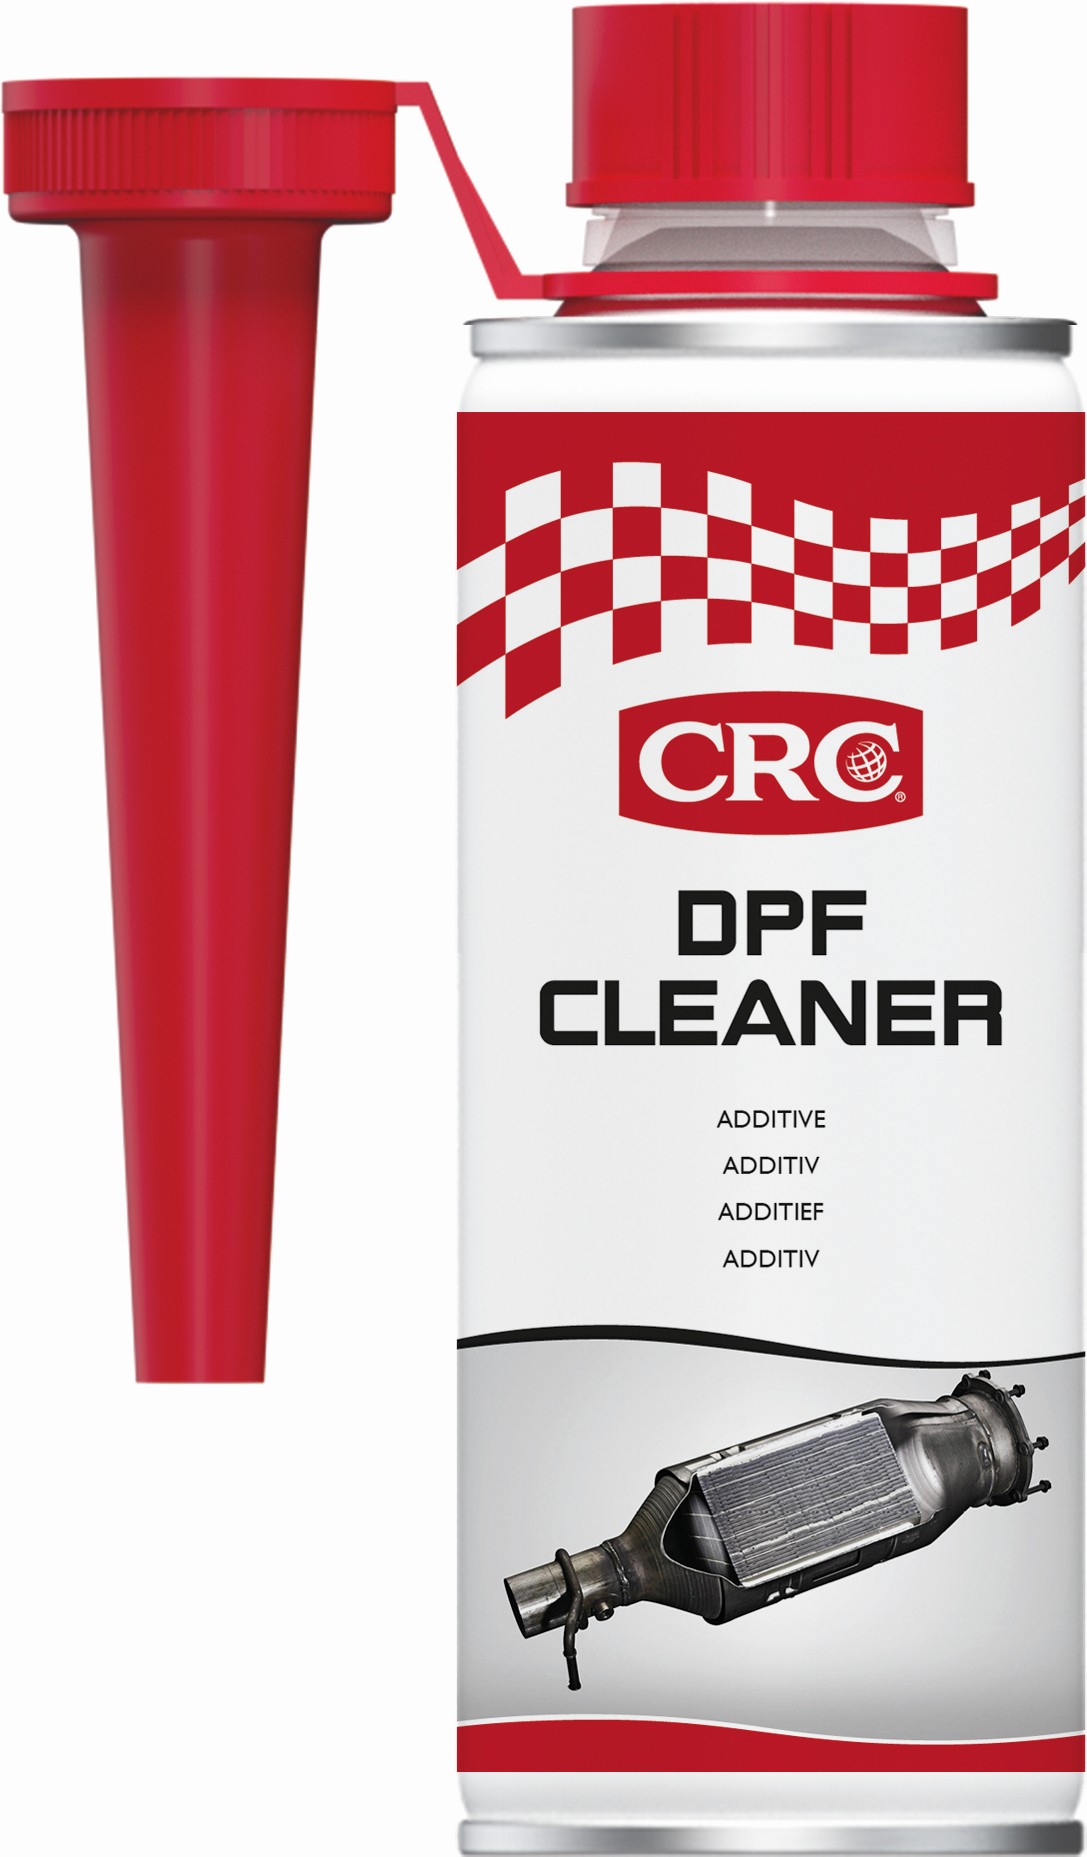 Limpiador de filtro de partículas Diesel (DPF)